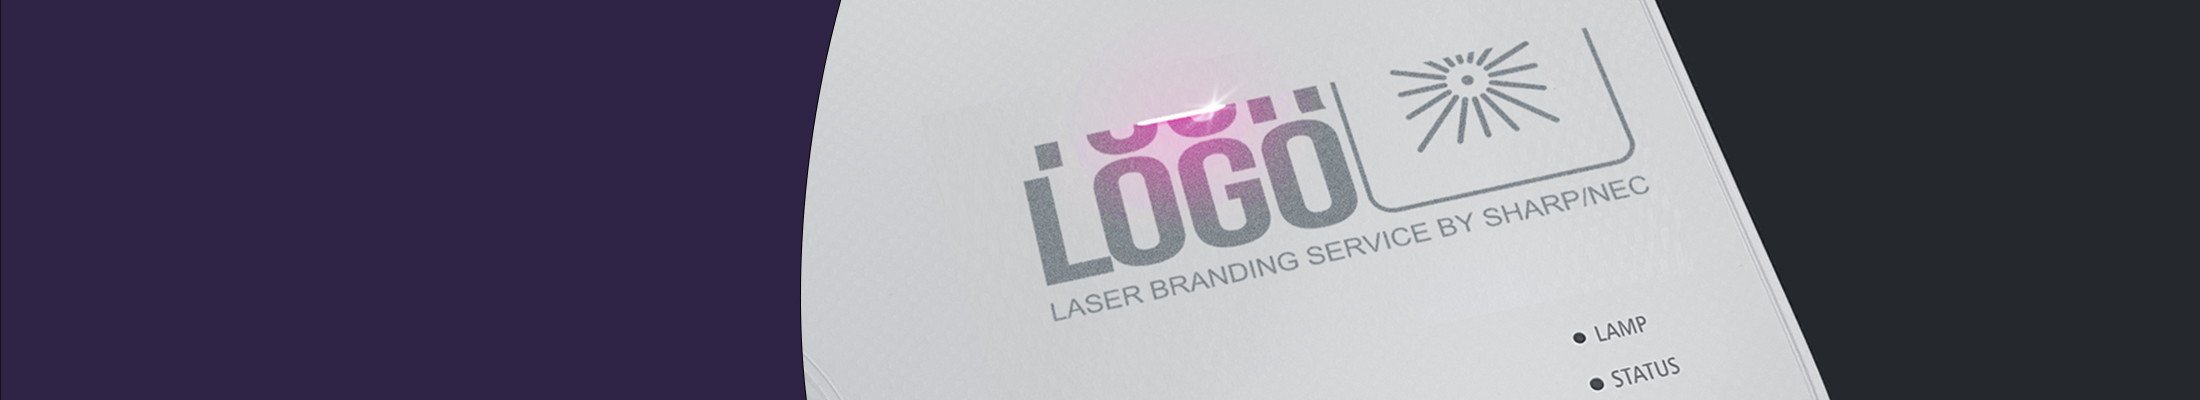 LaserBrandingService_heroImage_large